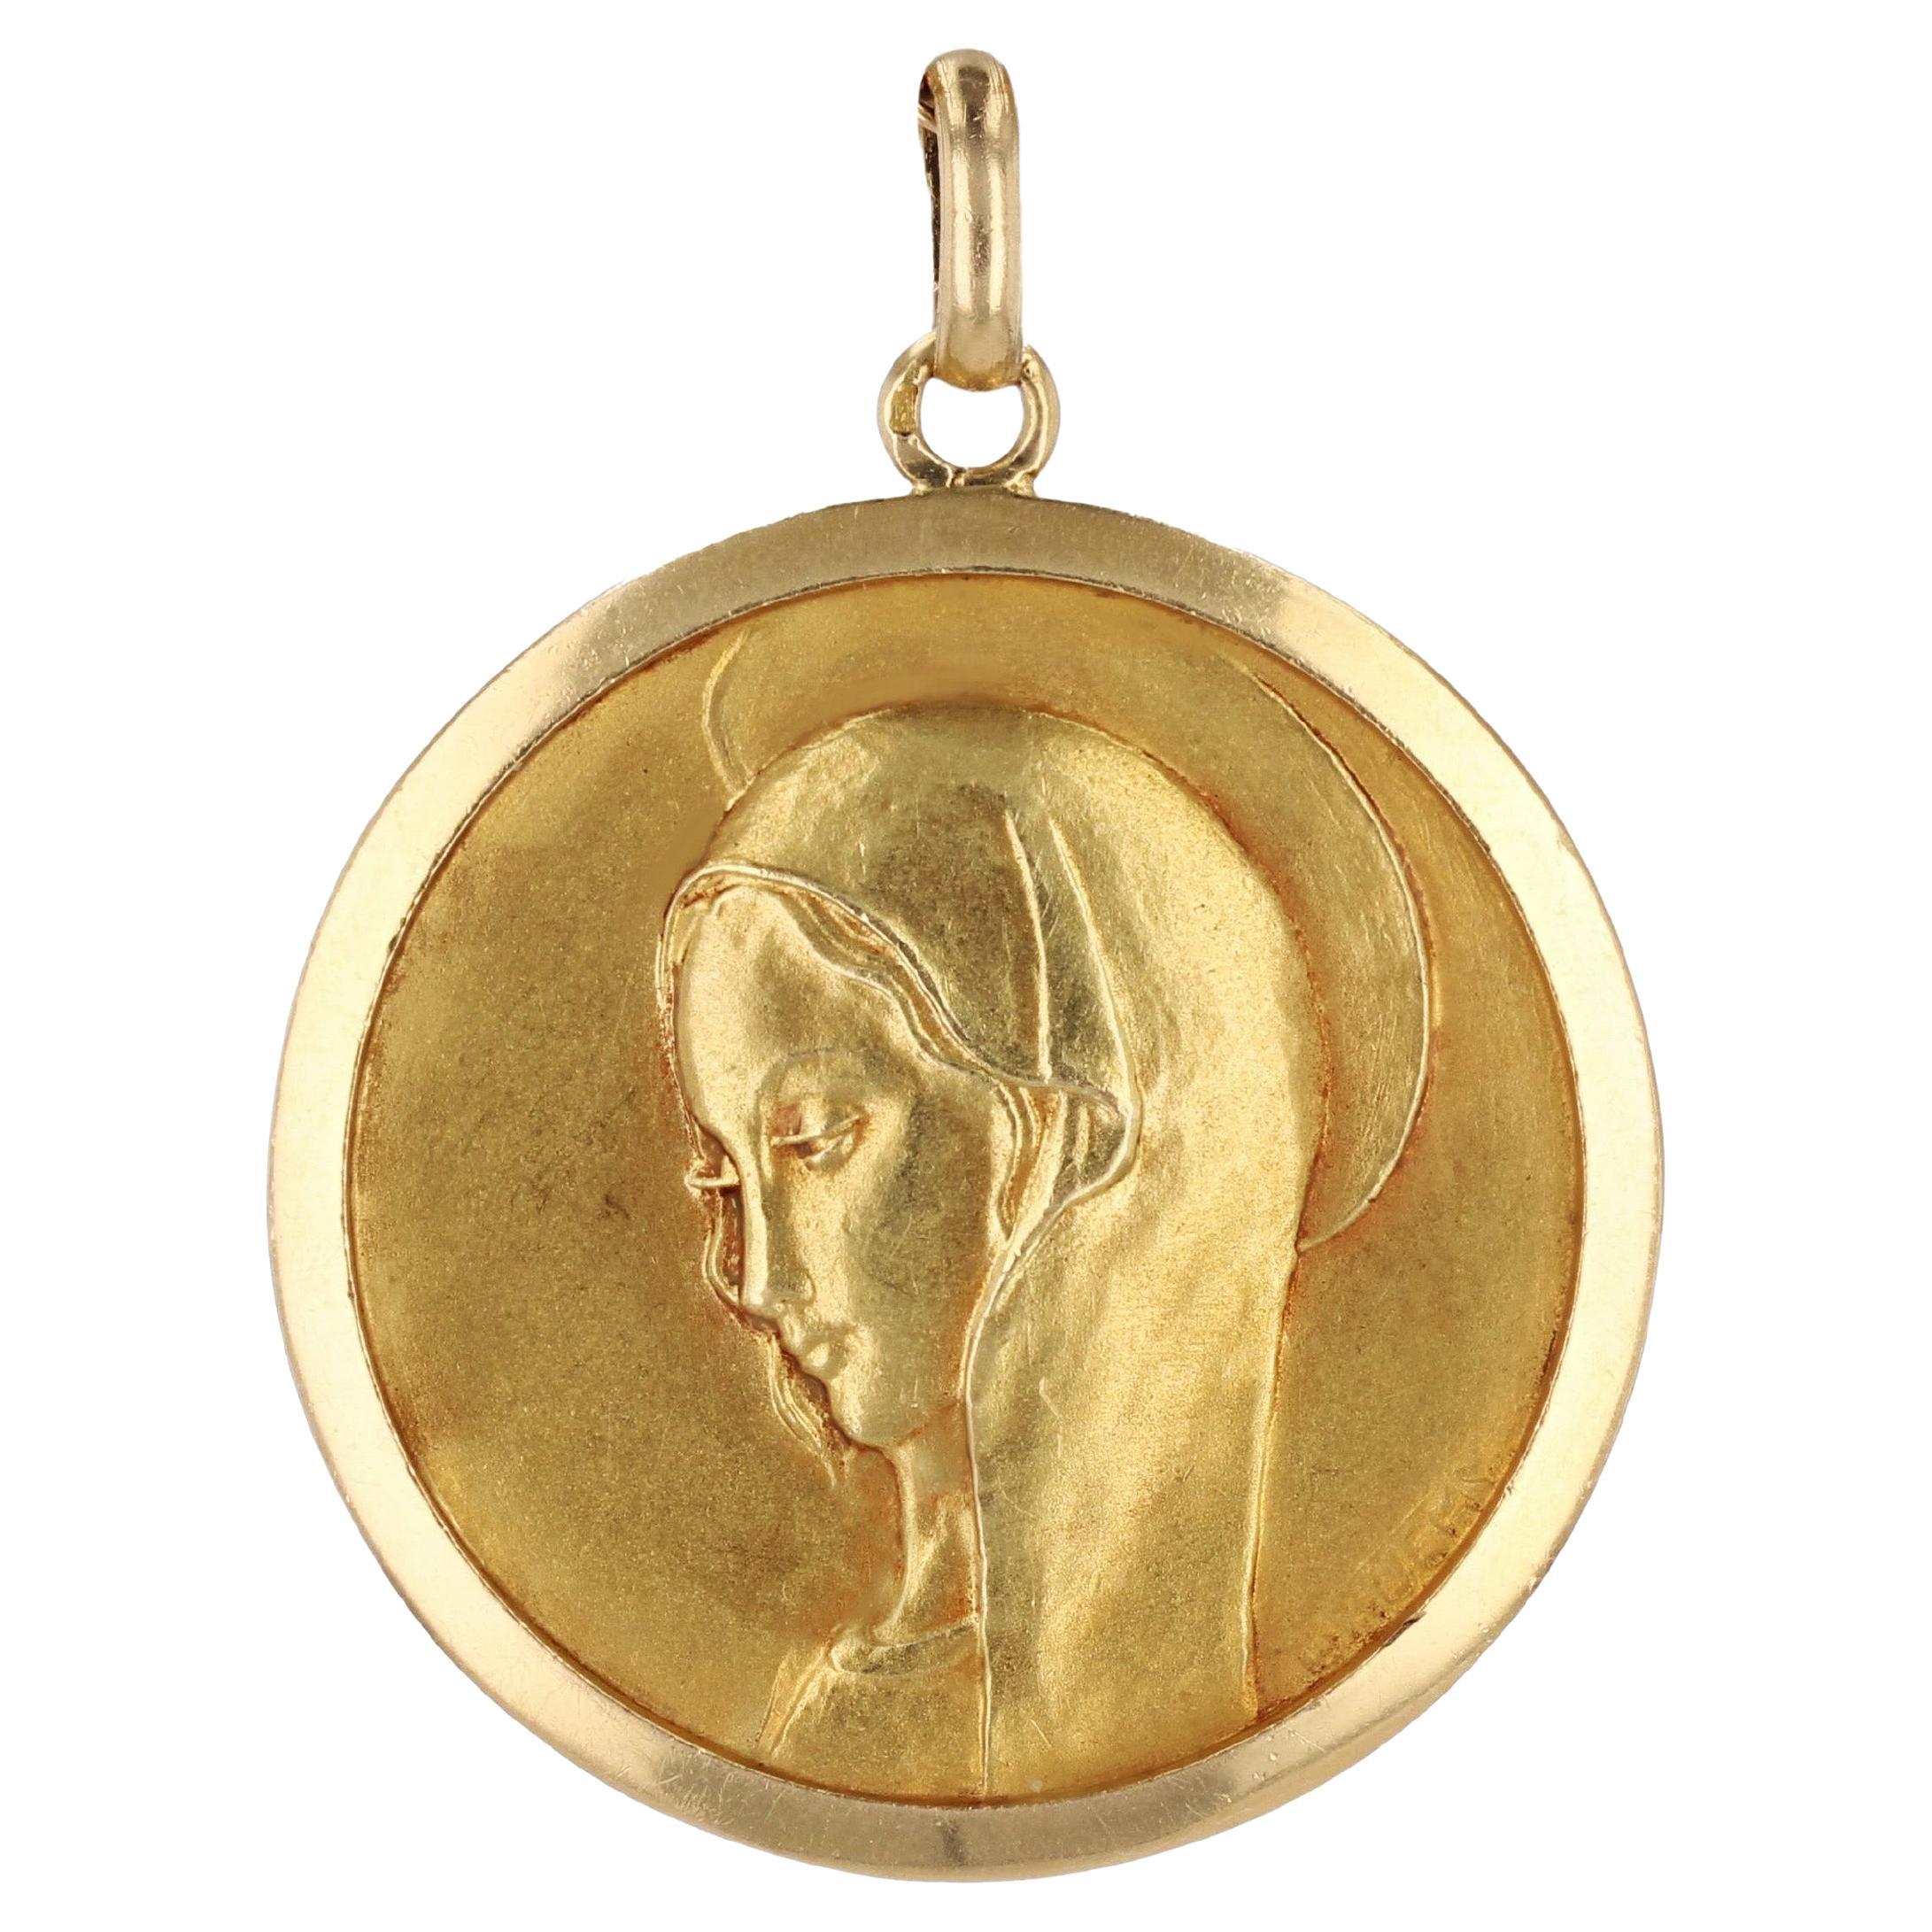 Médaille de la Vierge Marie en or jaune 18 carats signée Bauchy, France, années 1960